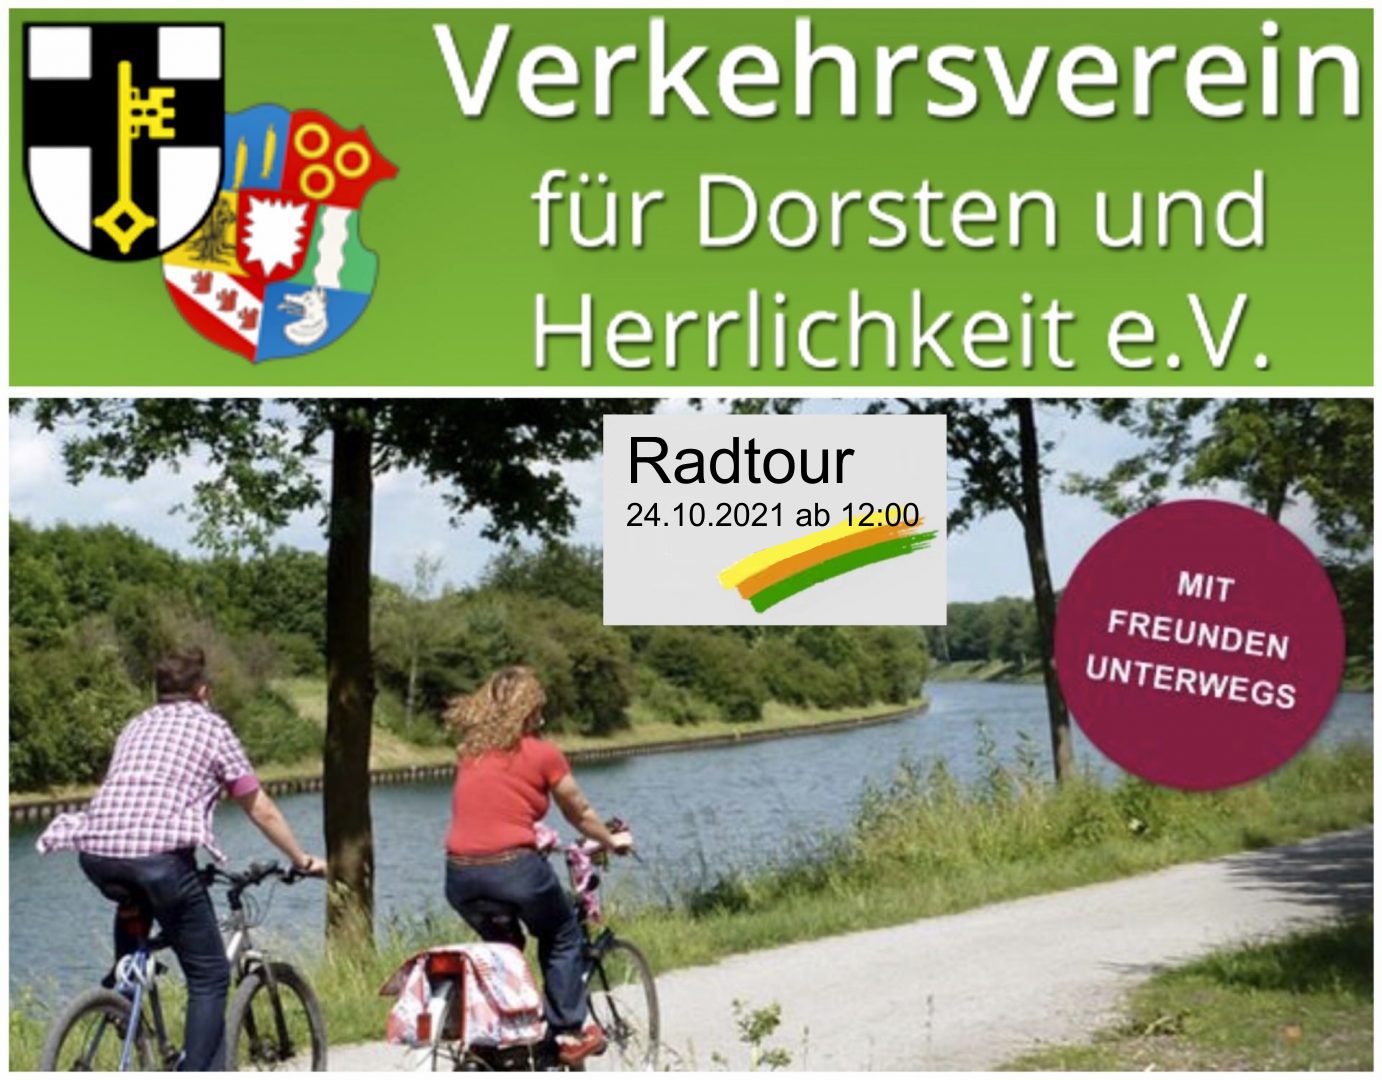 Der Verkehrsverein Dorsten lädt zu seiner letzten Radtour in diesem Jahr am 24.10.2021 ein